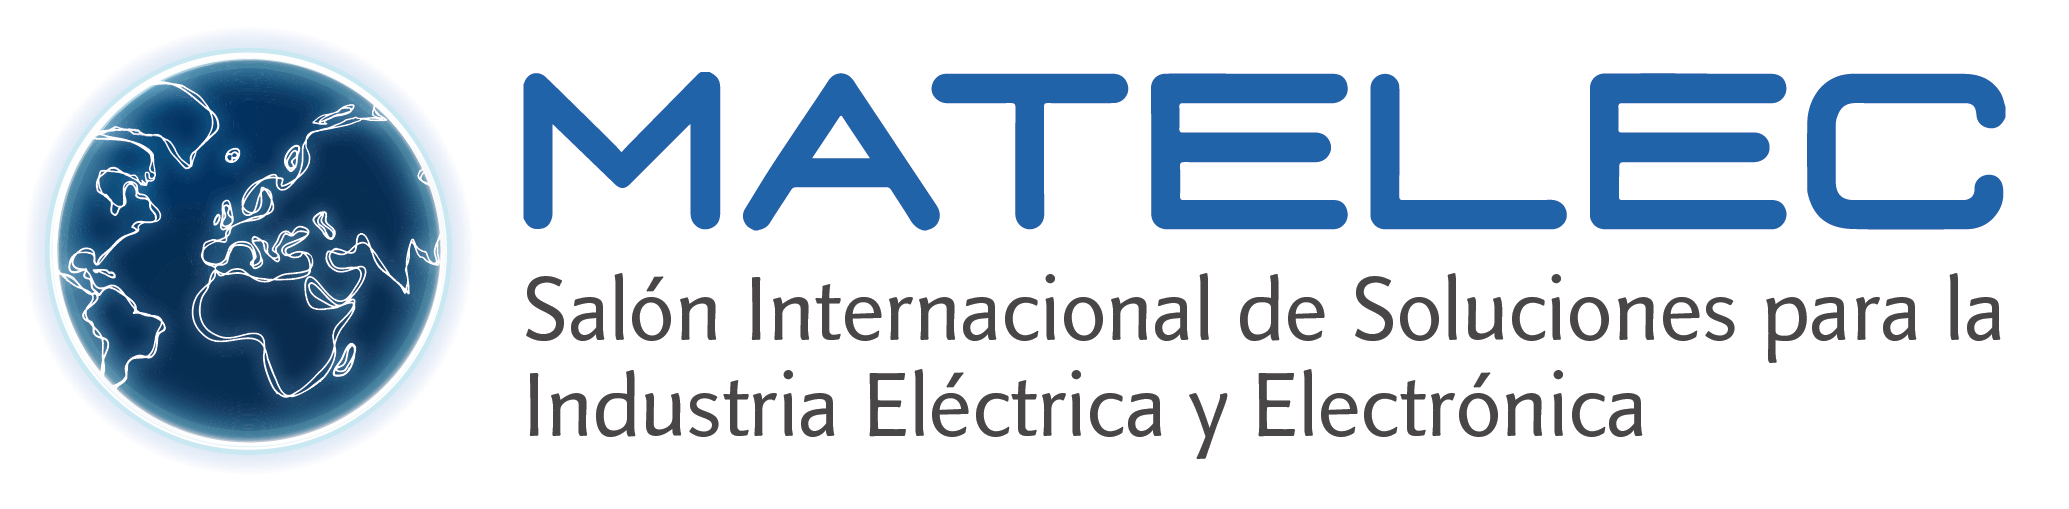 Logo Matelec 2014_esp